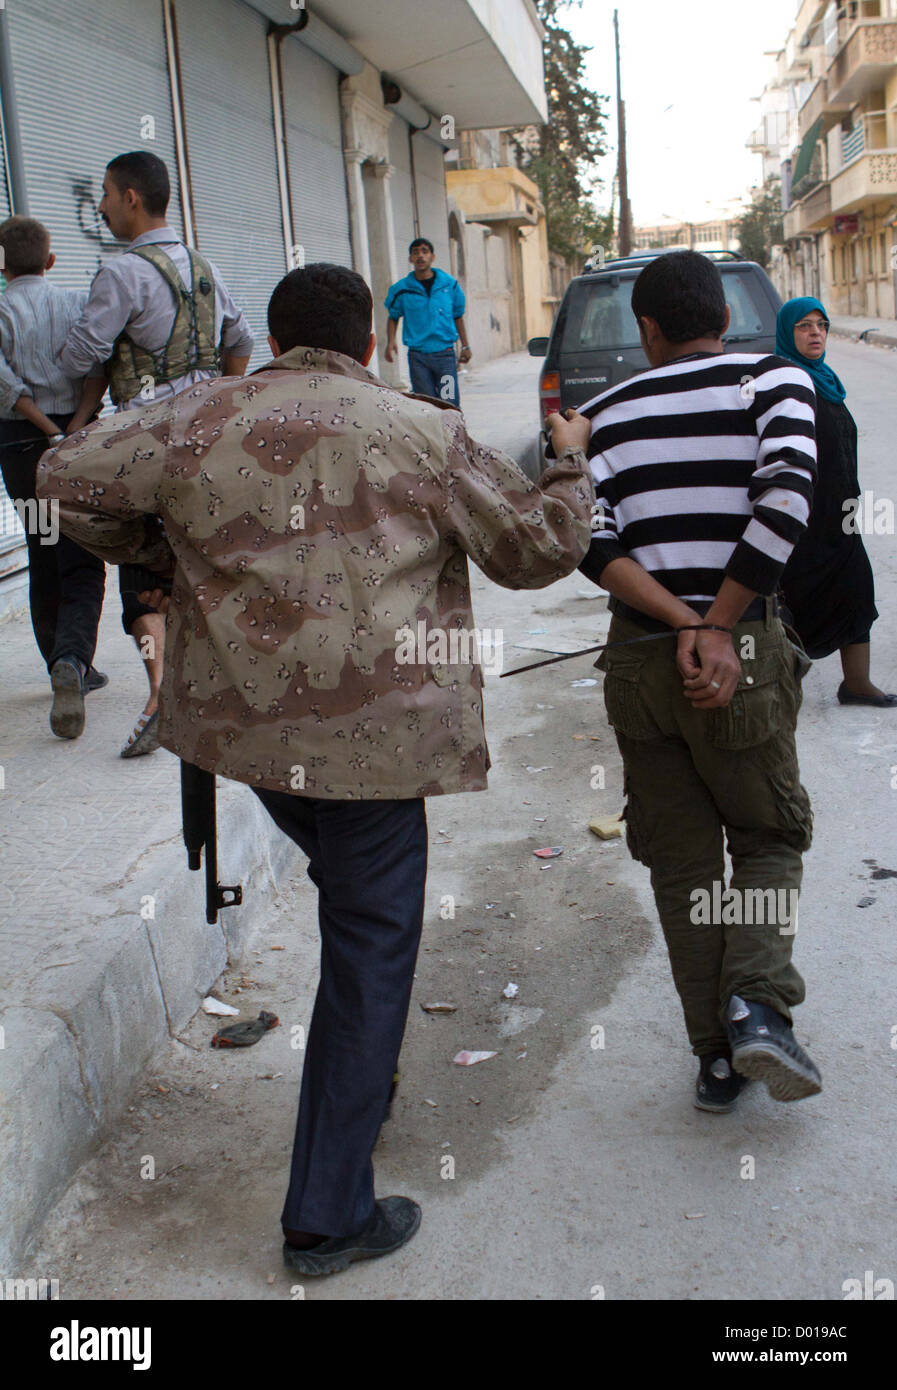 1 novembre 2012 - Alep, Syrie : les membres de l'Armée syrienne libre s'arrêter deux hommes qui ont été pris à des pillages. Banque D'Images